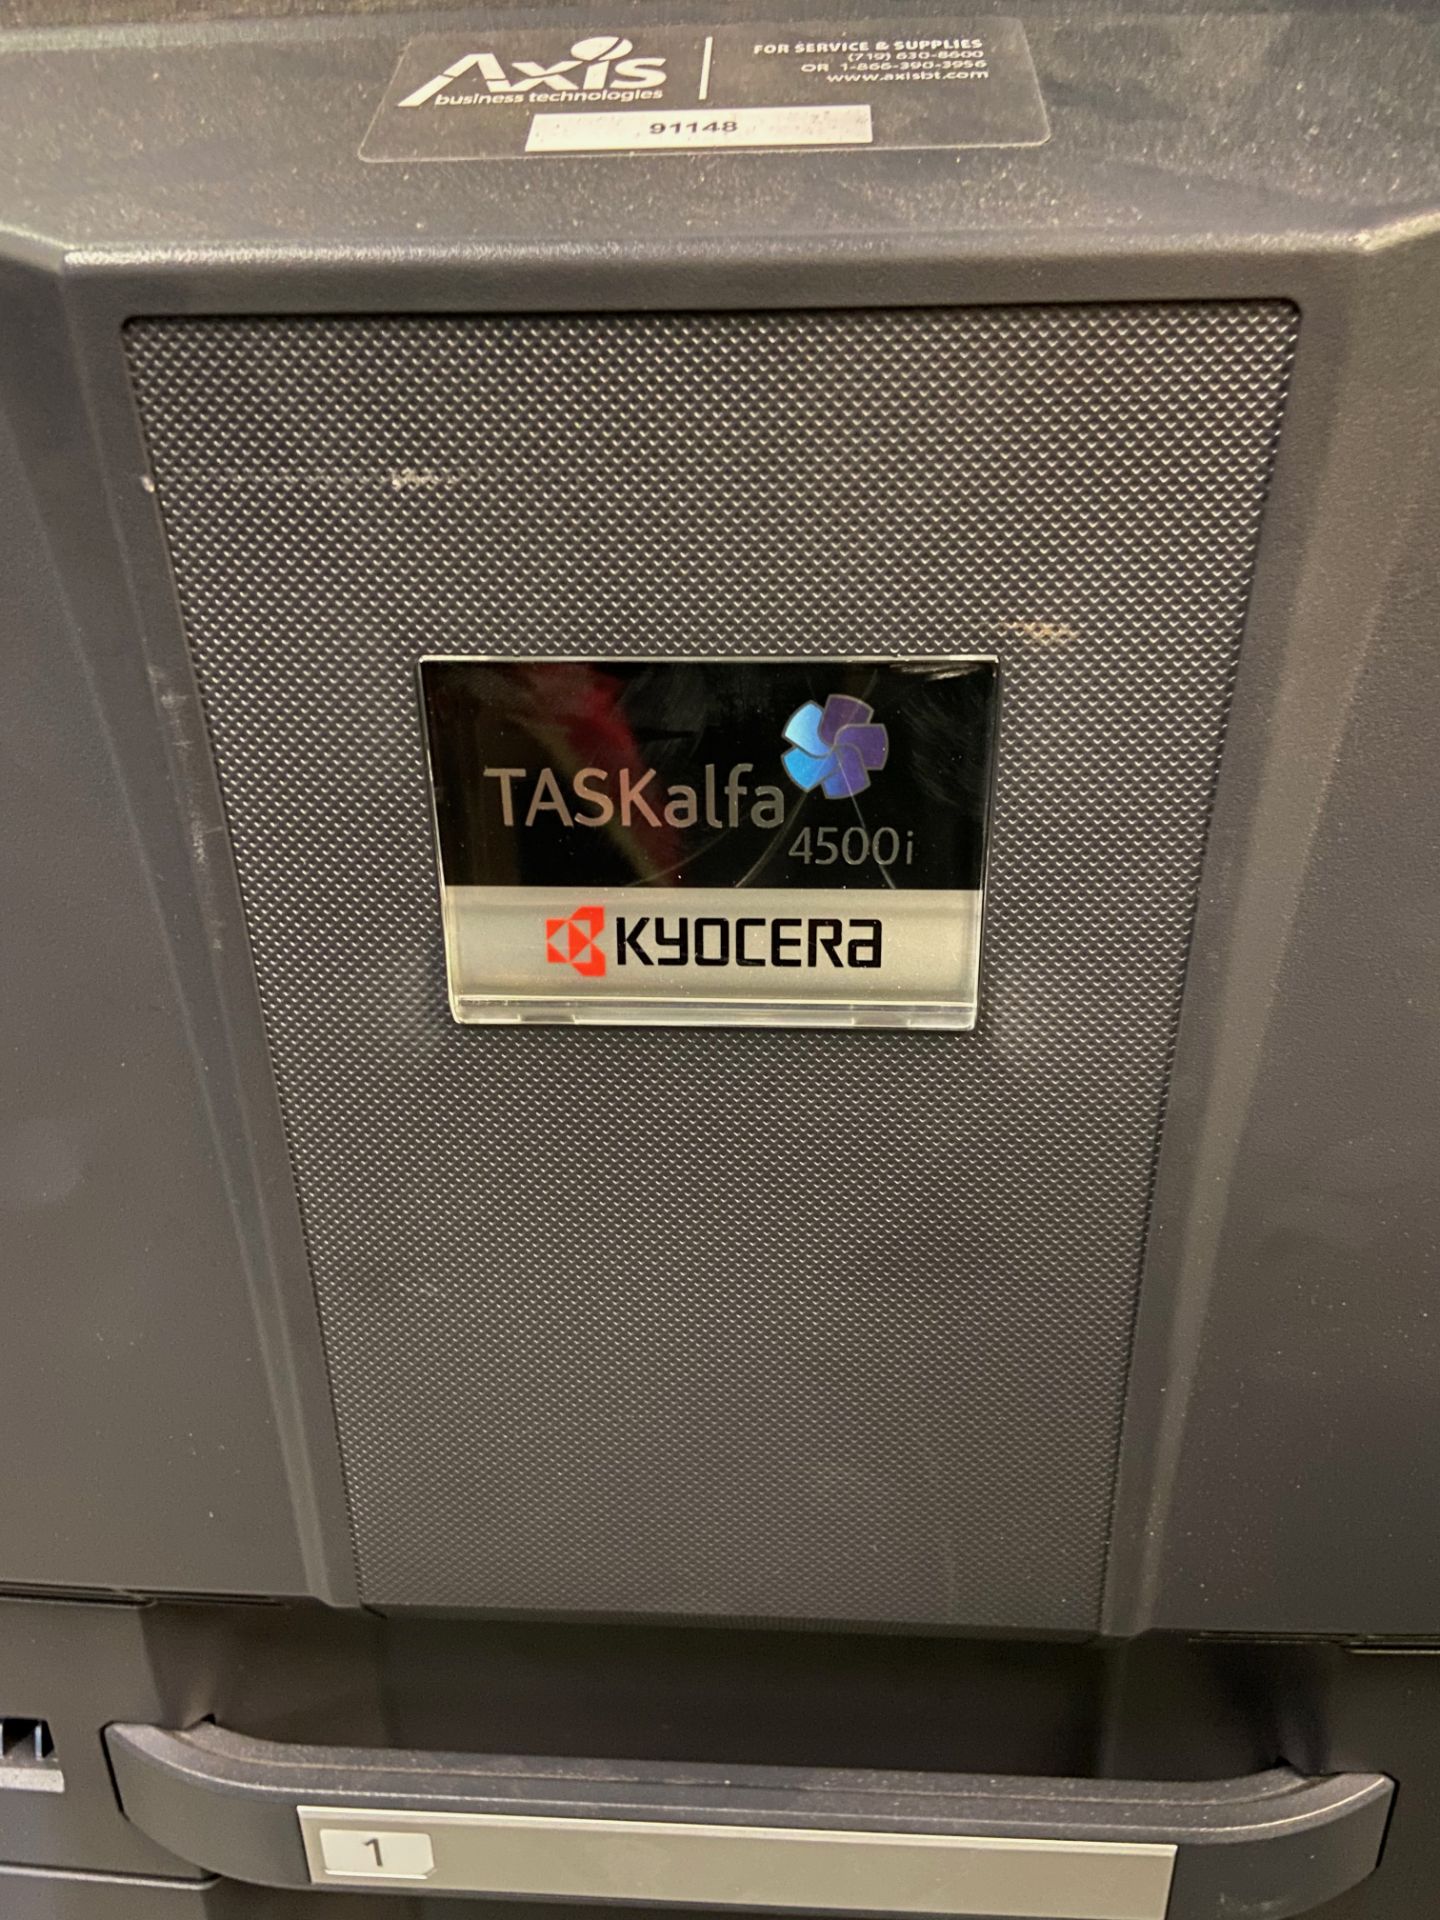 Kyocera TASKalfa 4500i Black and White Print/ Scan/ Copy System, Machine# NLS1900044, 120V, 60Hz, - Image 3 of 8